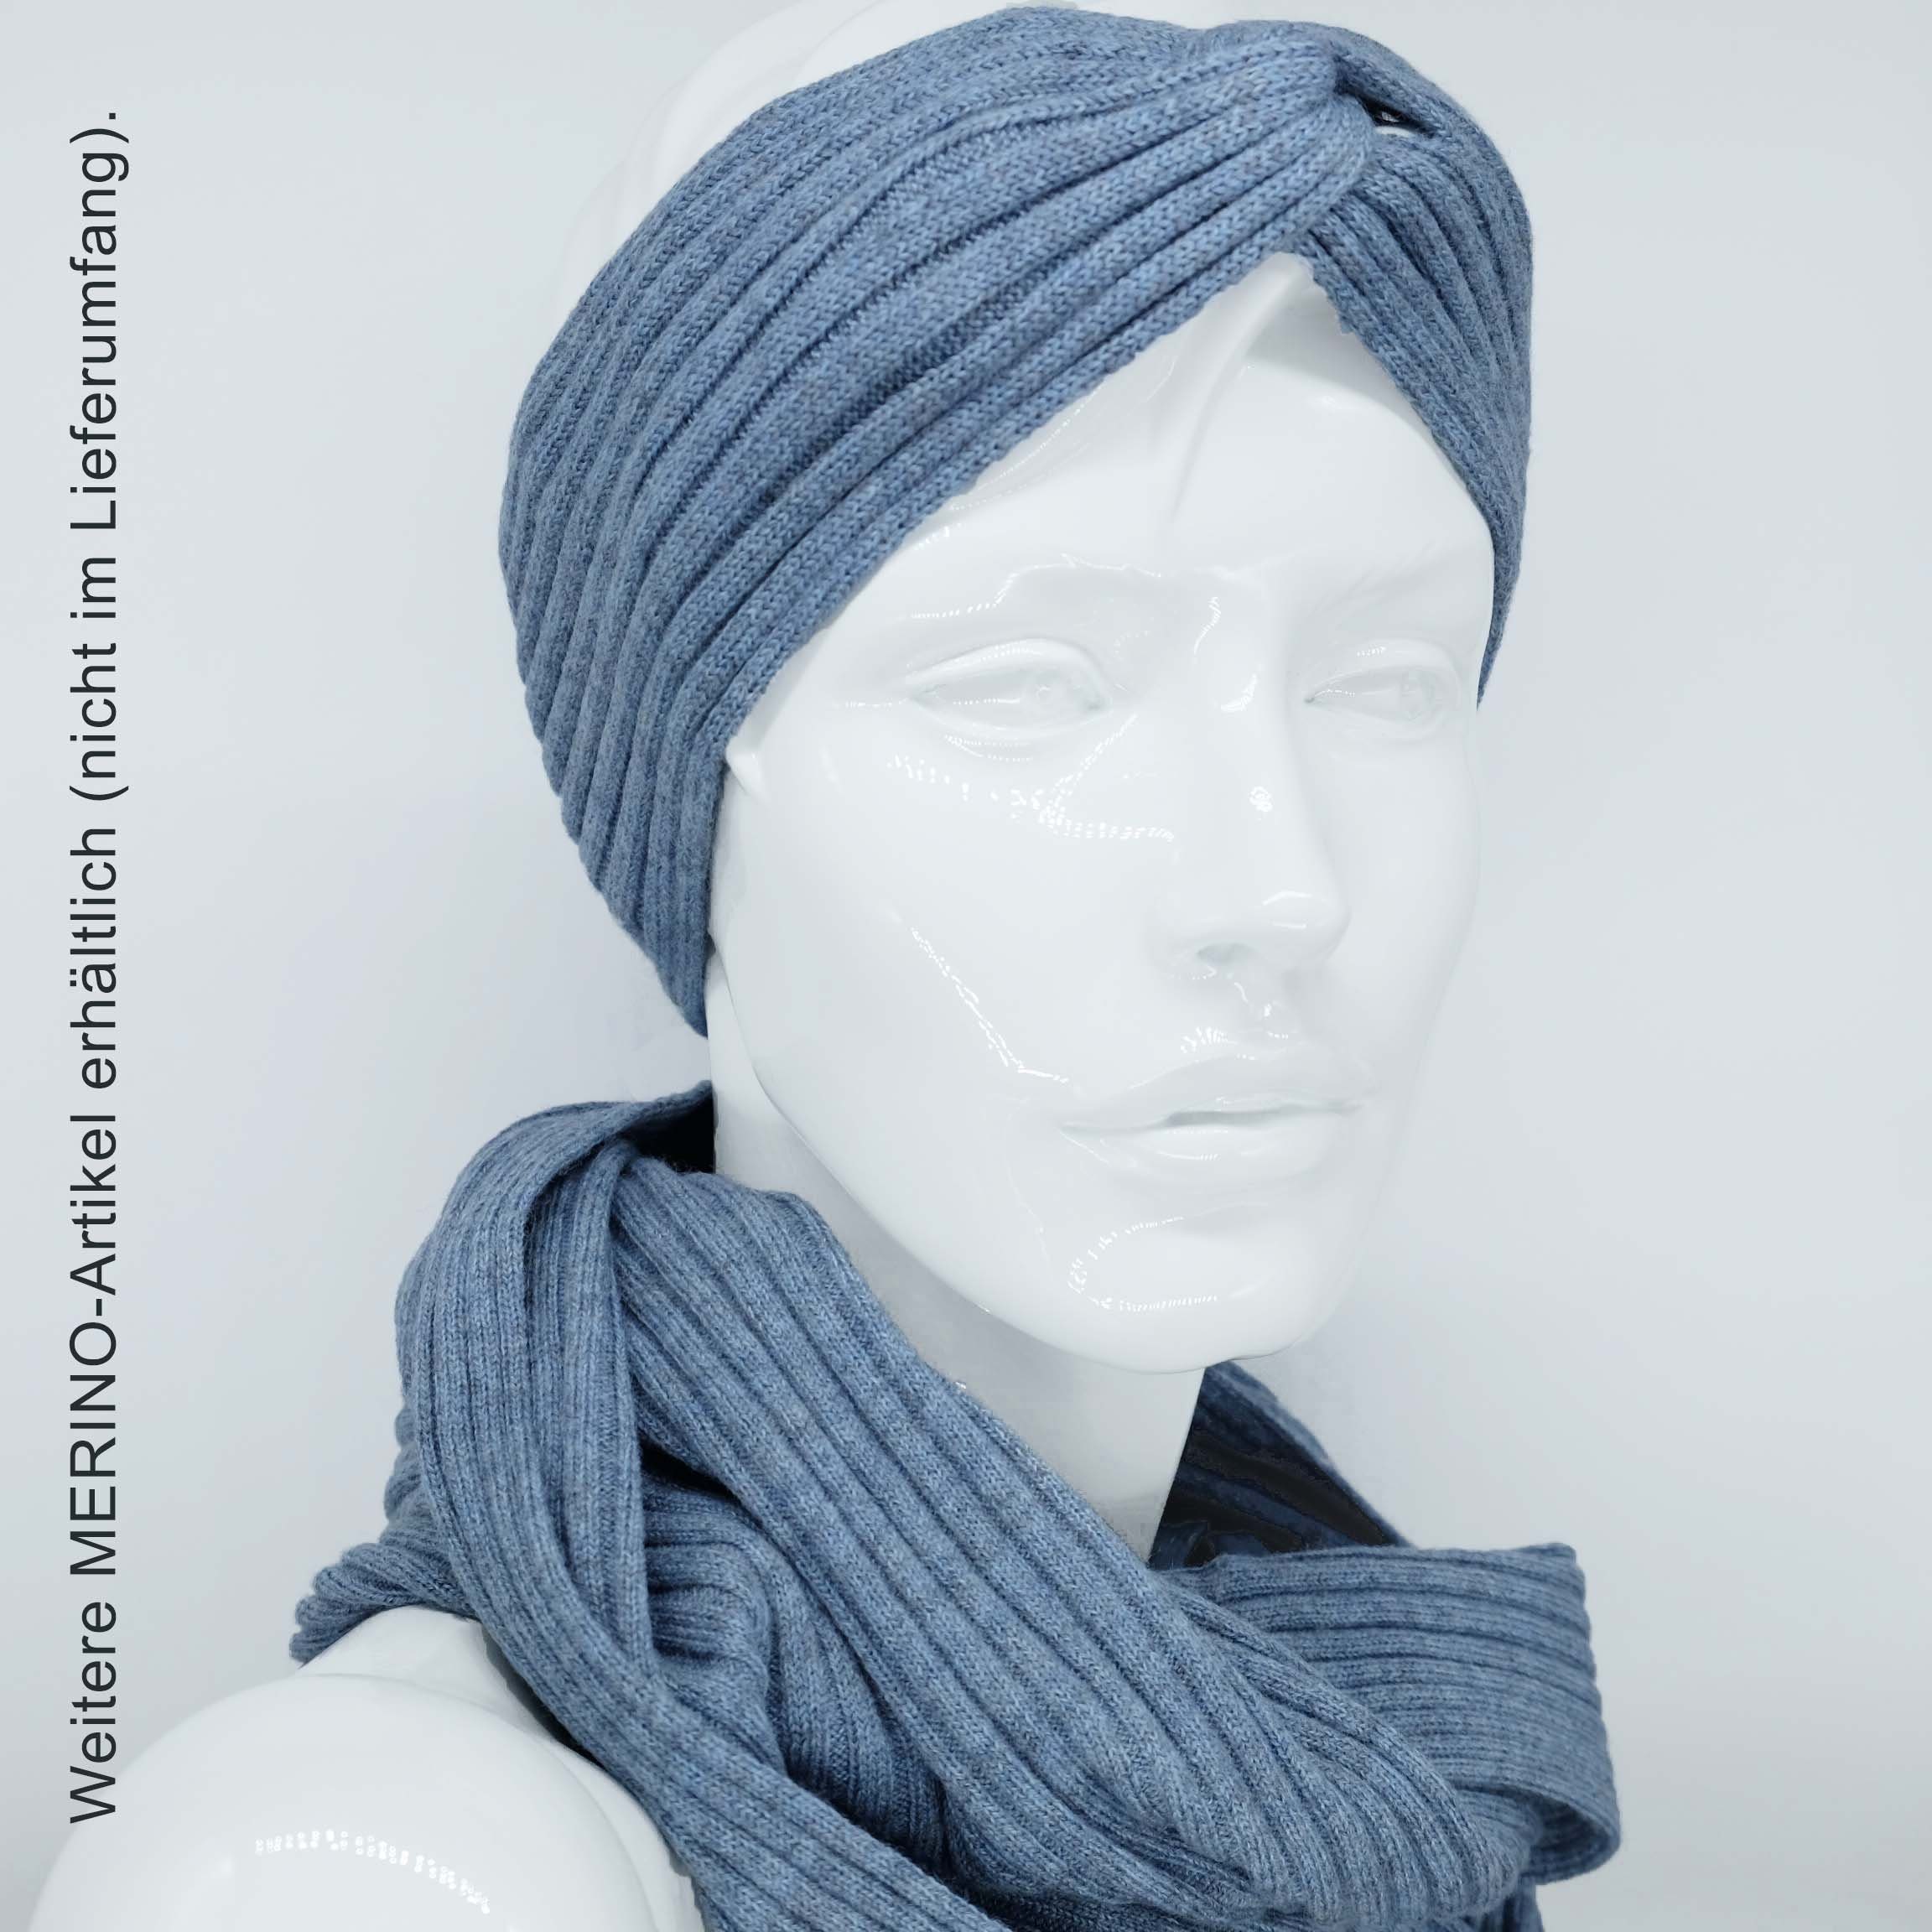 BEAZZ Stirnband Stirnband Ohrenwärmer Damen WOLLE blaugrau 100% weich Merino Feinstrick, Winter meliert und warm